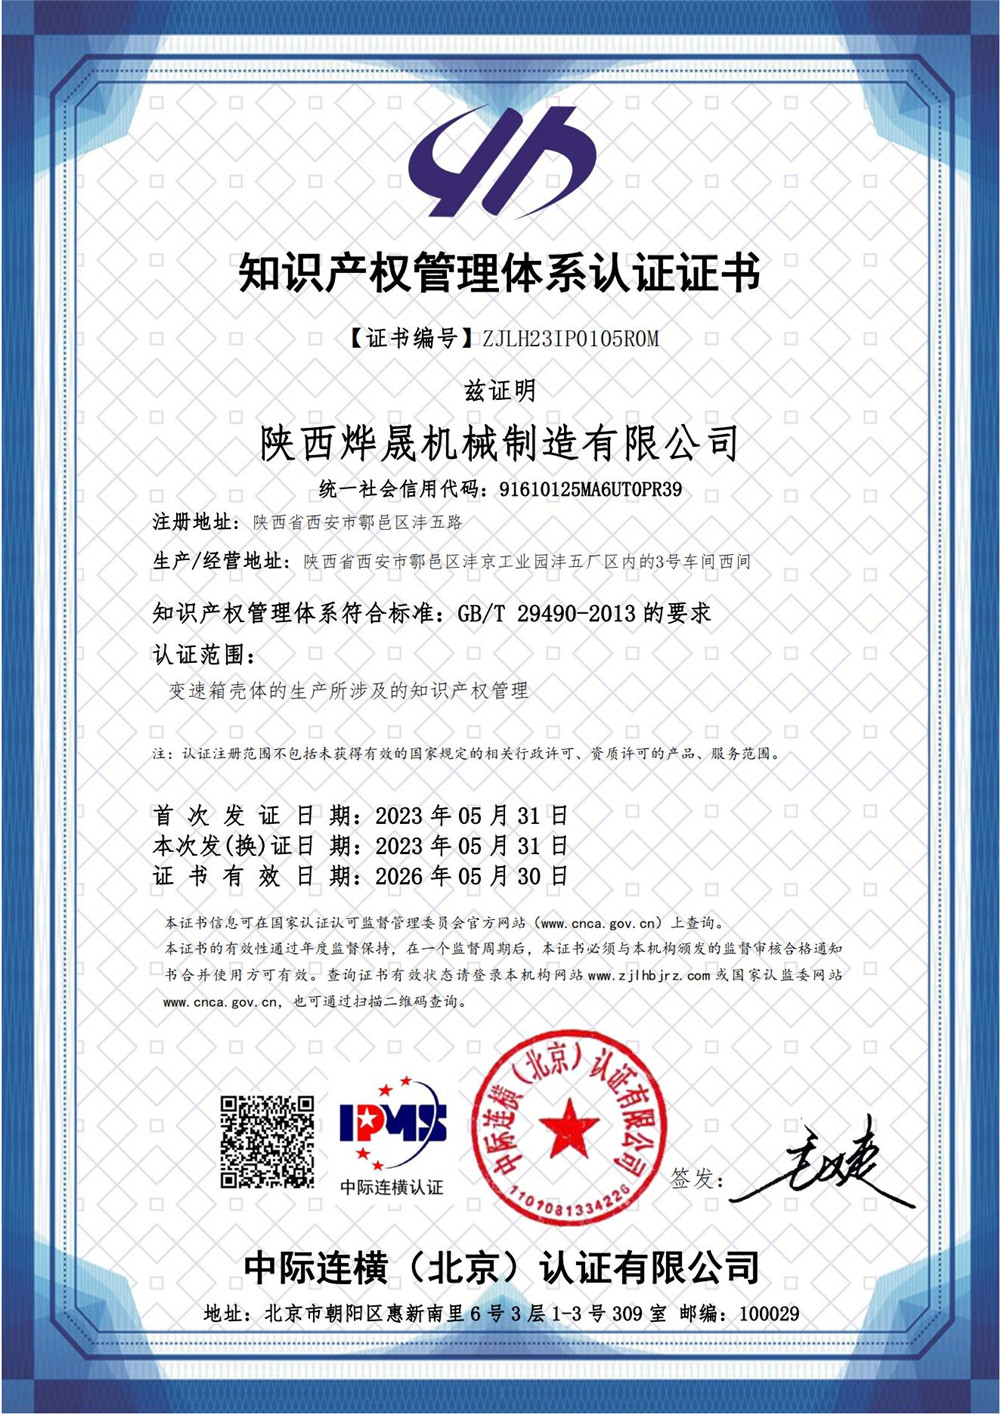 知識產權管理體系證書  IPMS證書中文